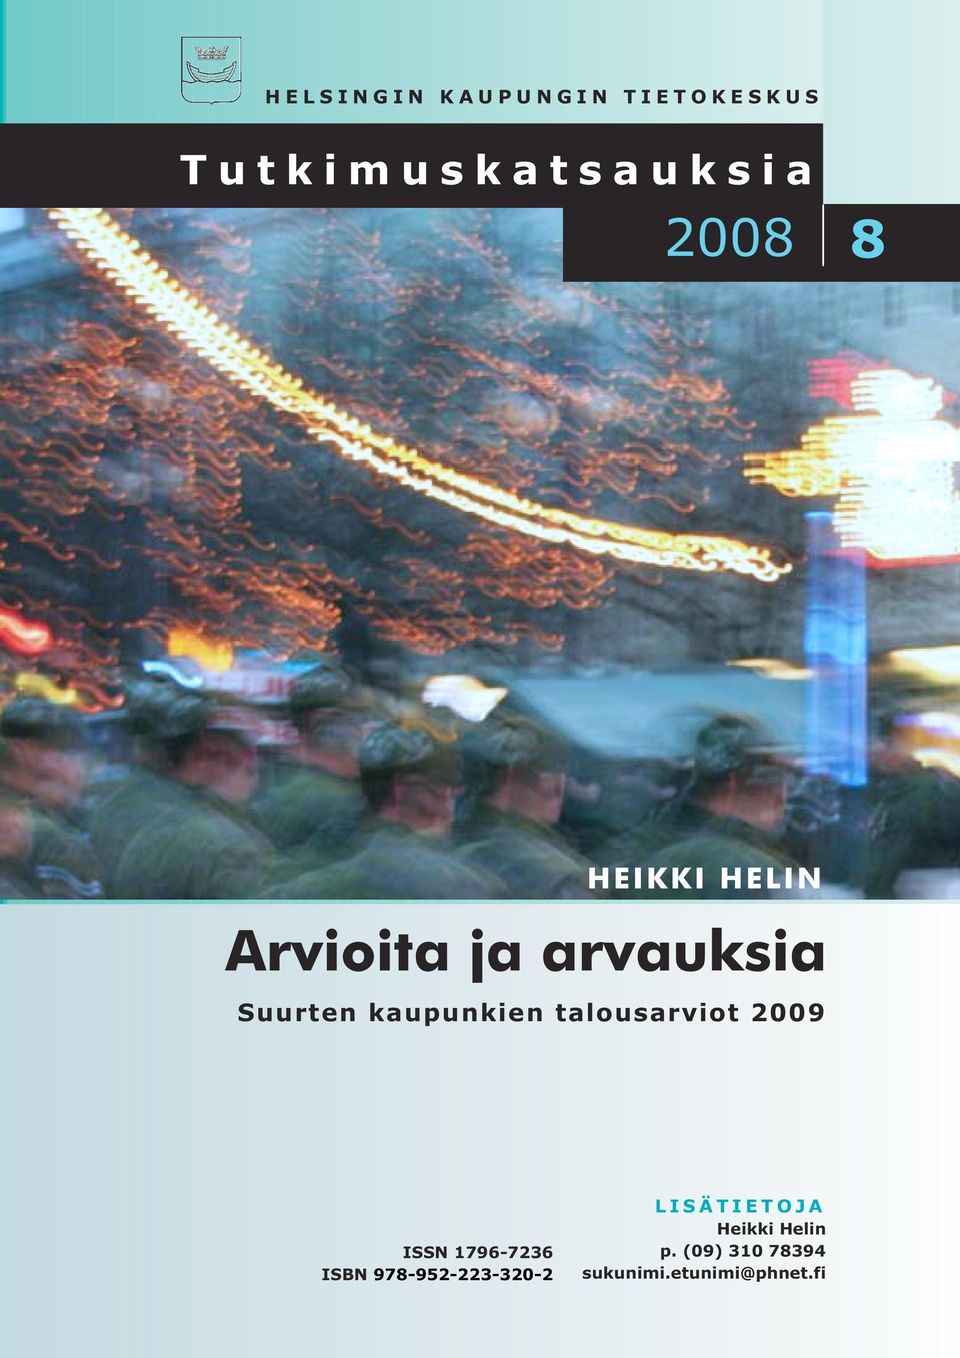 talousarviot 2009 ISSN 1796-7236 ISBN 978-952-223-320-2